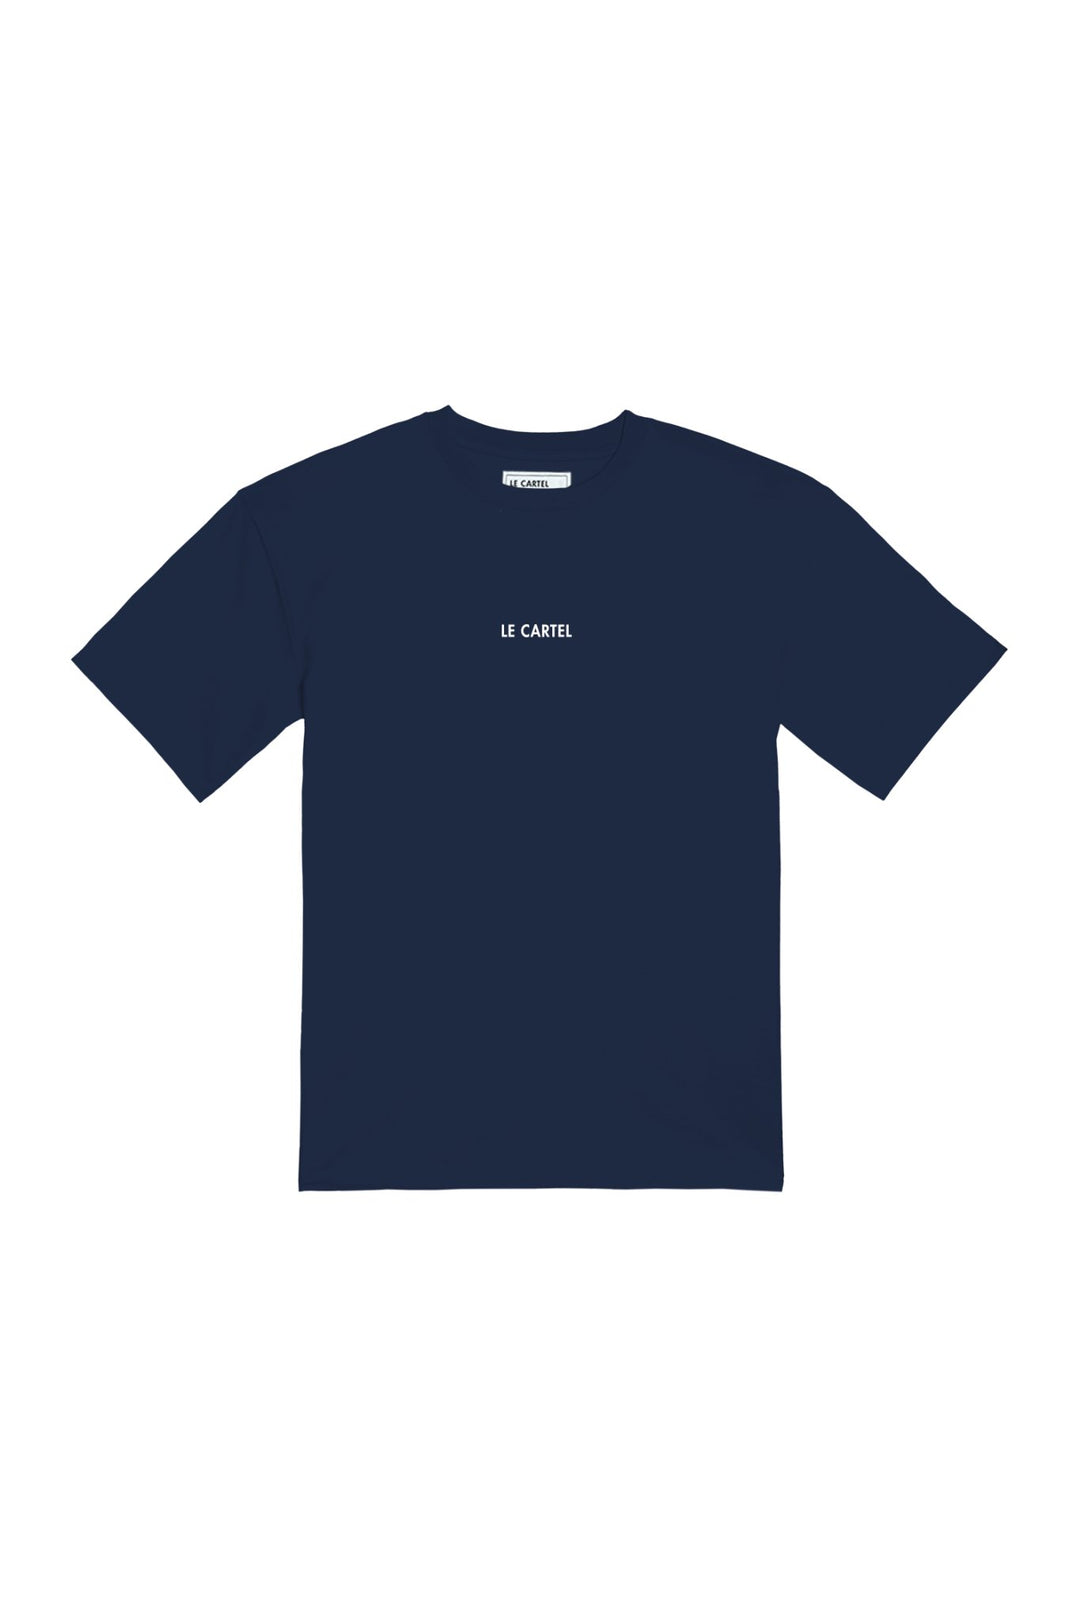 L'AMOUR・T-shirt unisexe・Bleu marine - Le Cartel